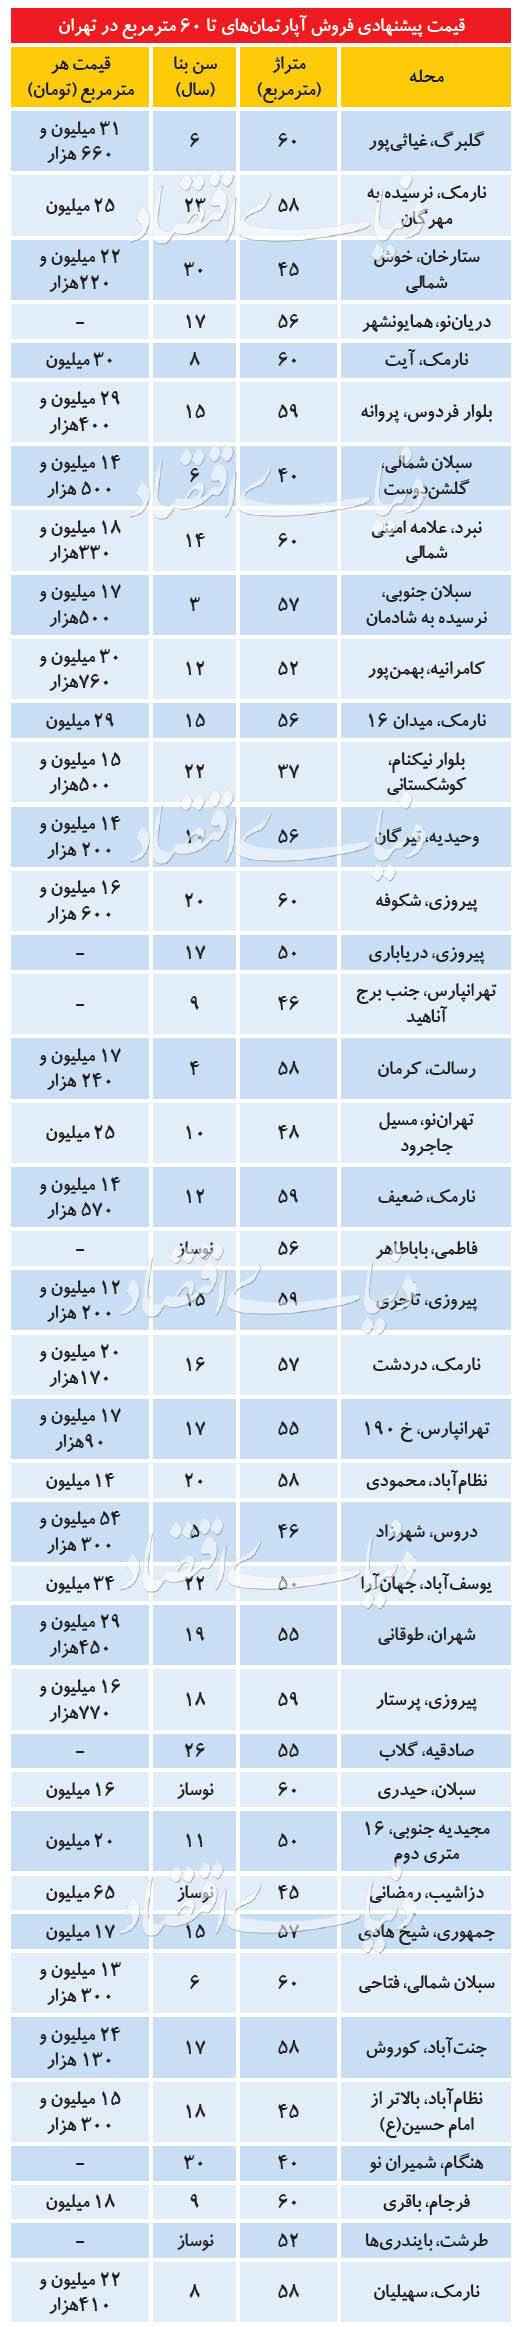 قیمت خرید خانه و نرخ اجاره مسکن در تهران امروز چهارشنبه 22 مرداد ۹۹